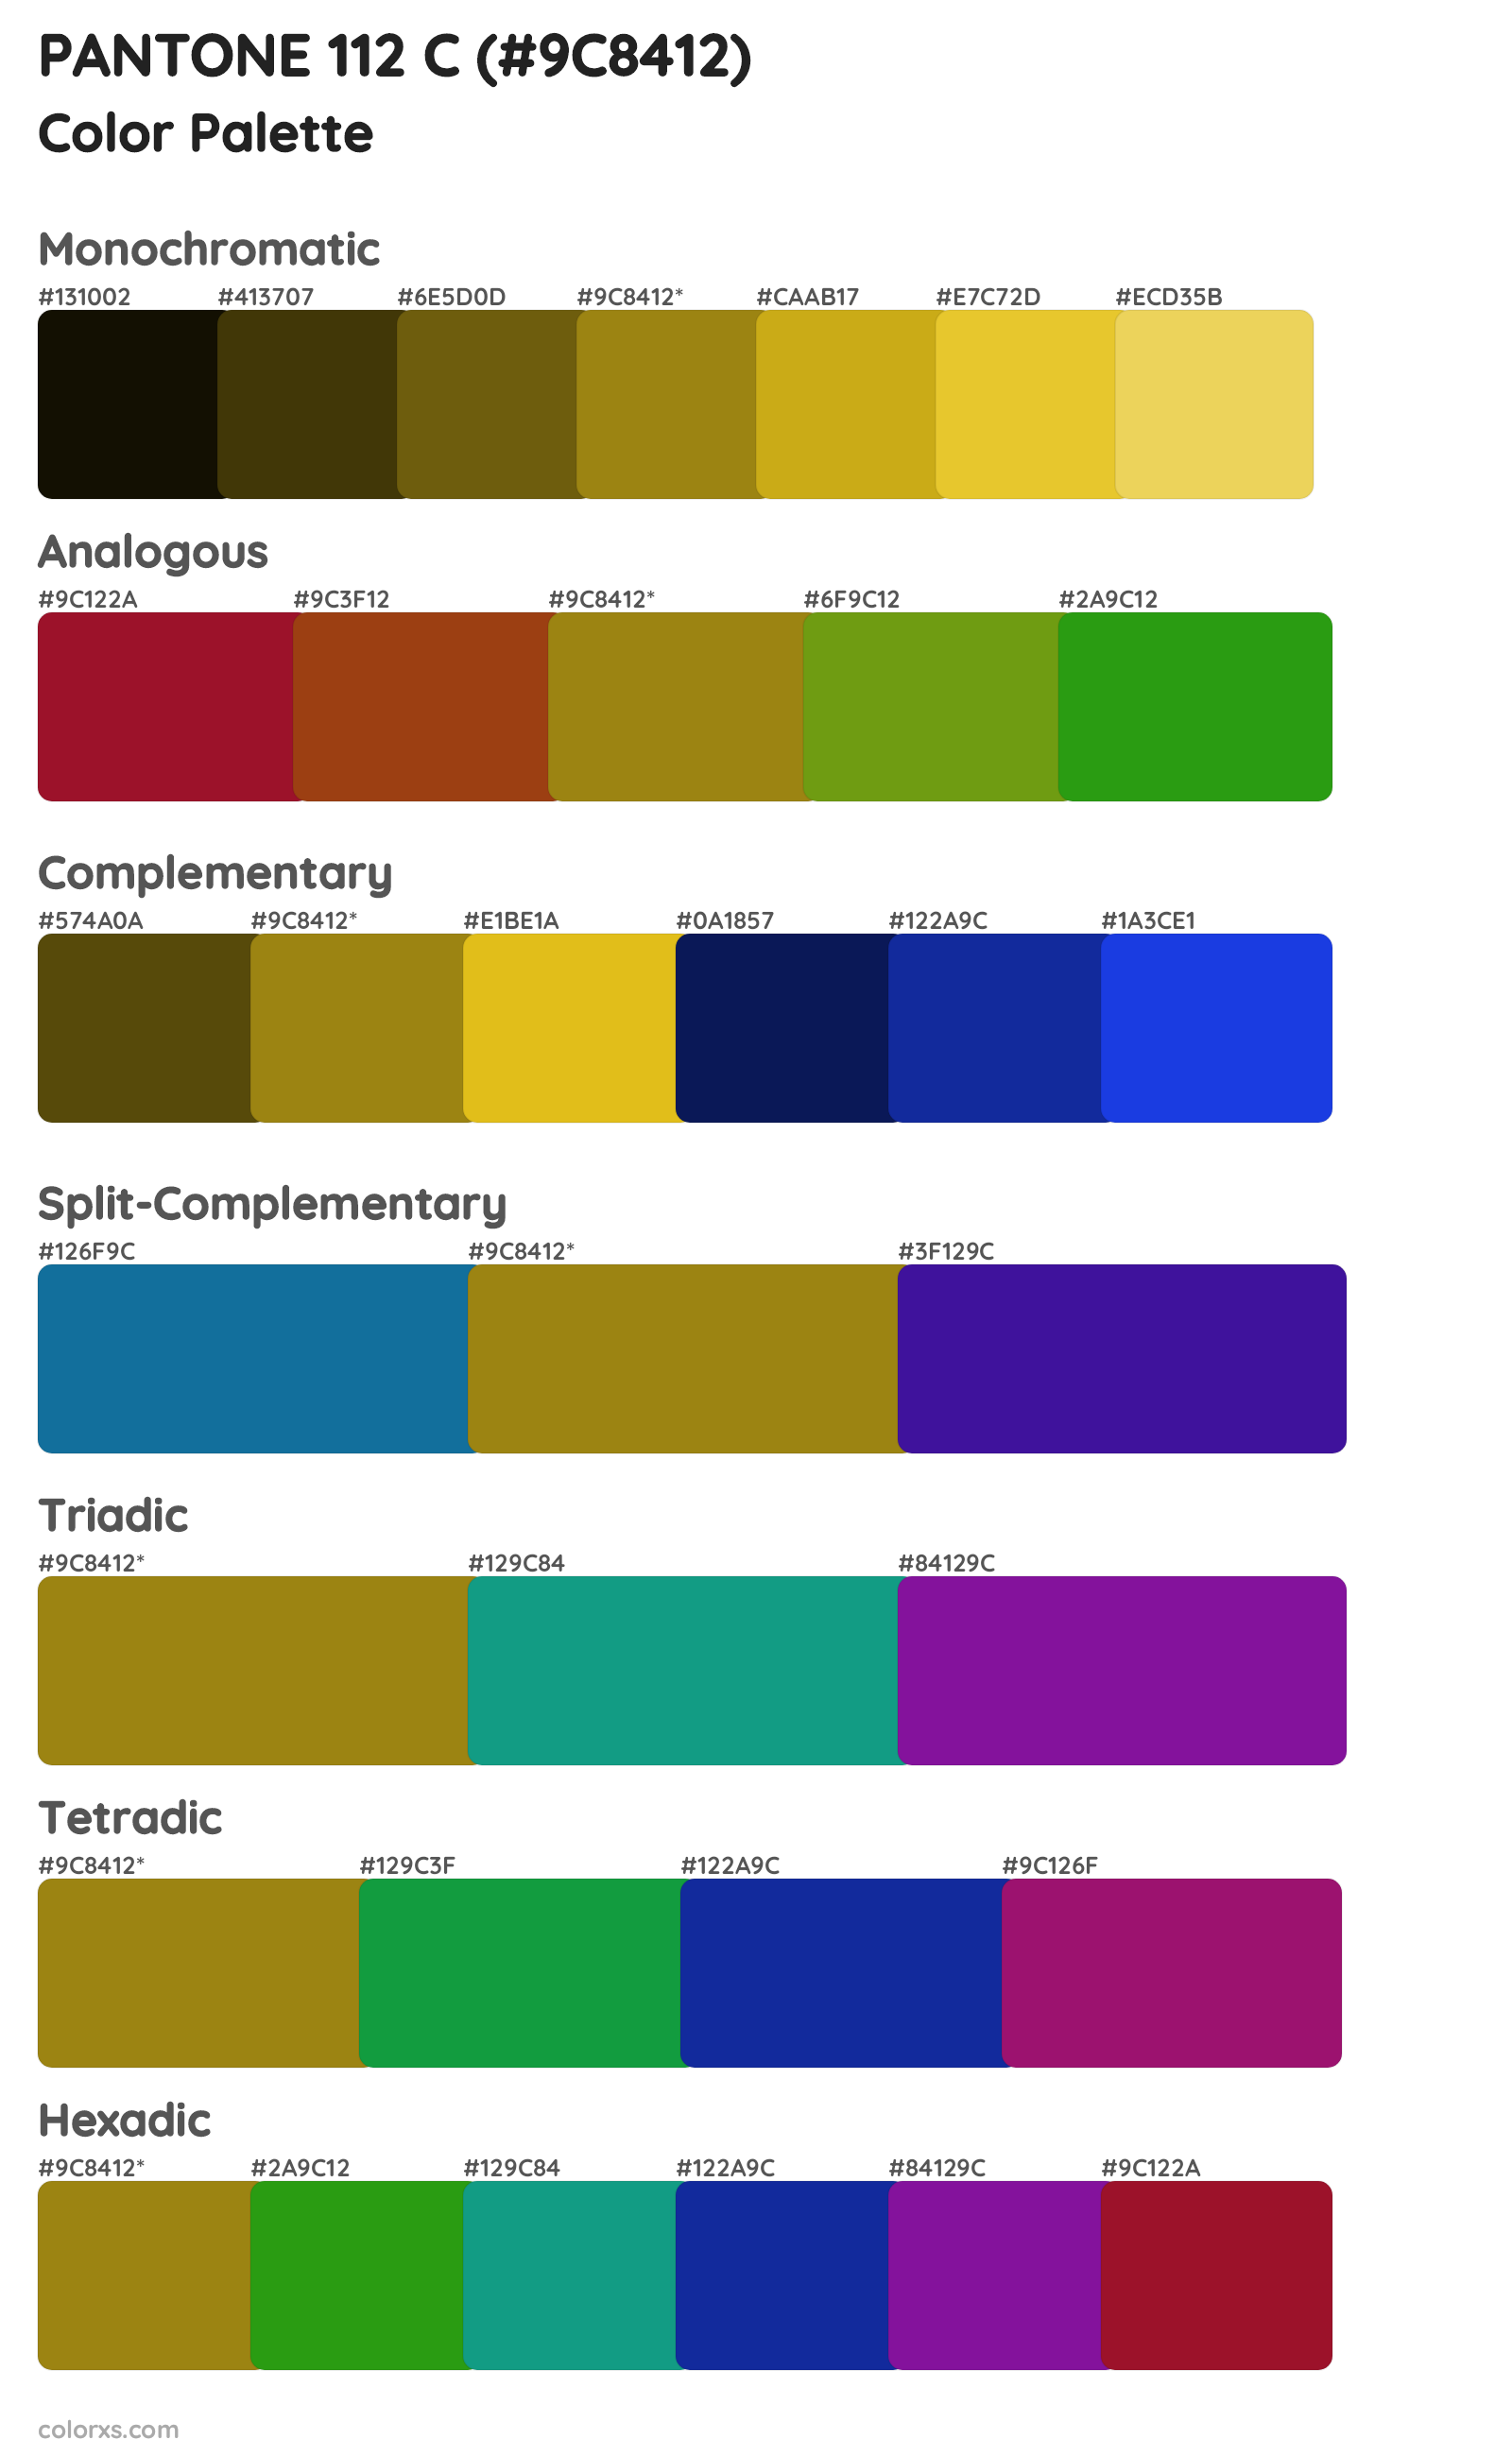 PANTONE 112 C Color Scheme Palettes